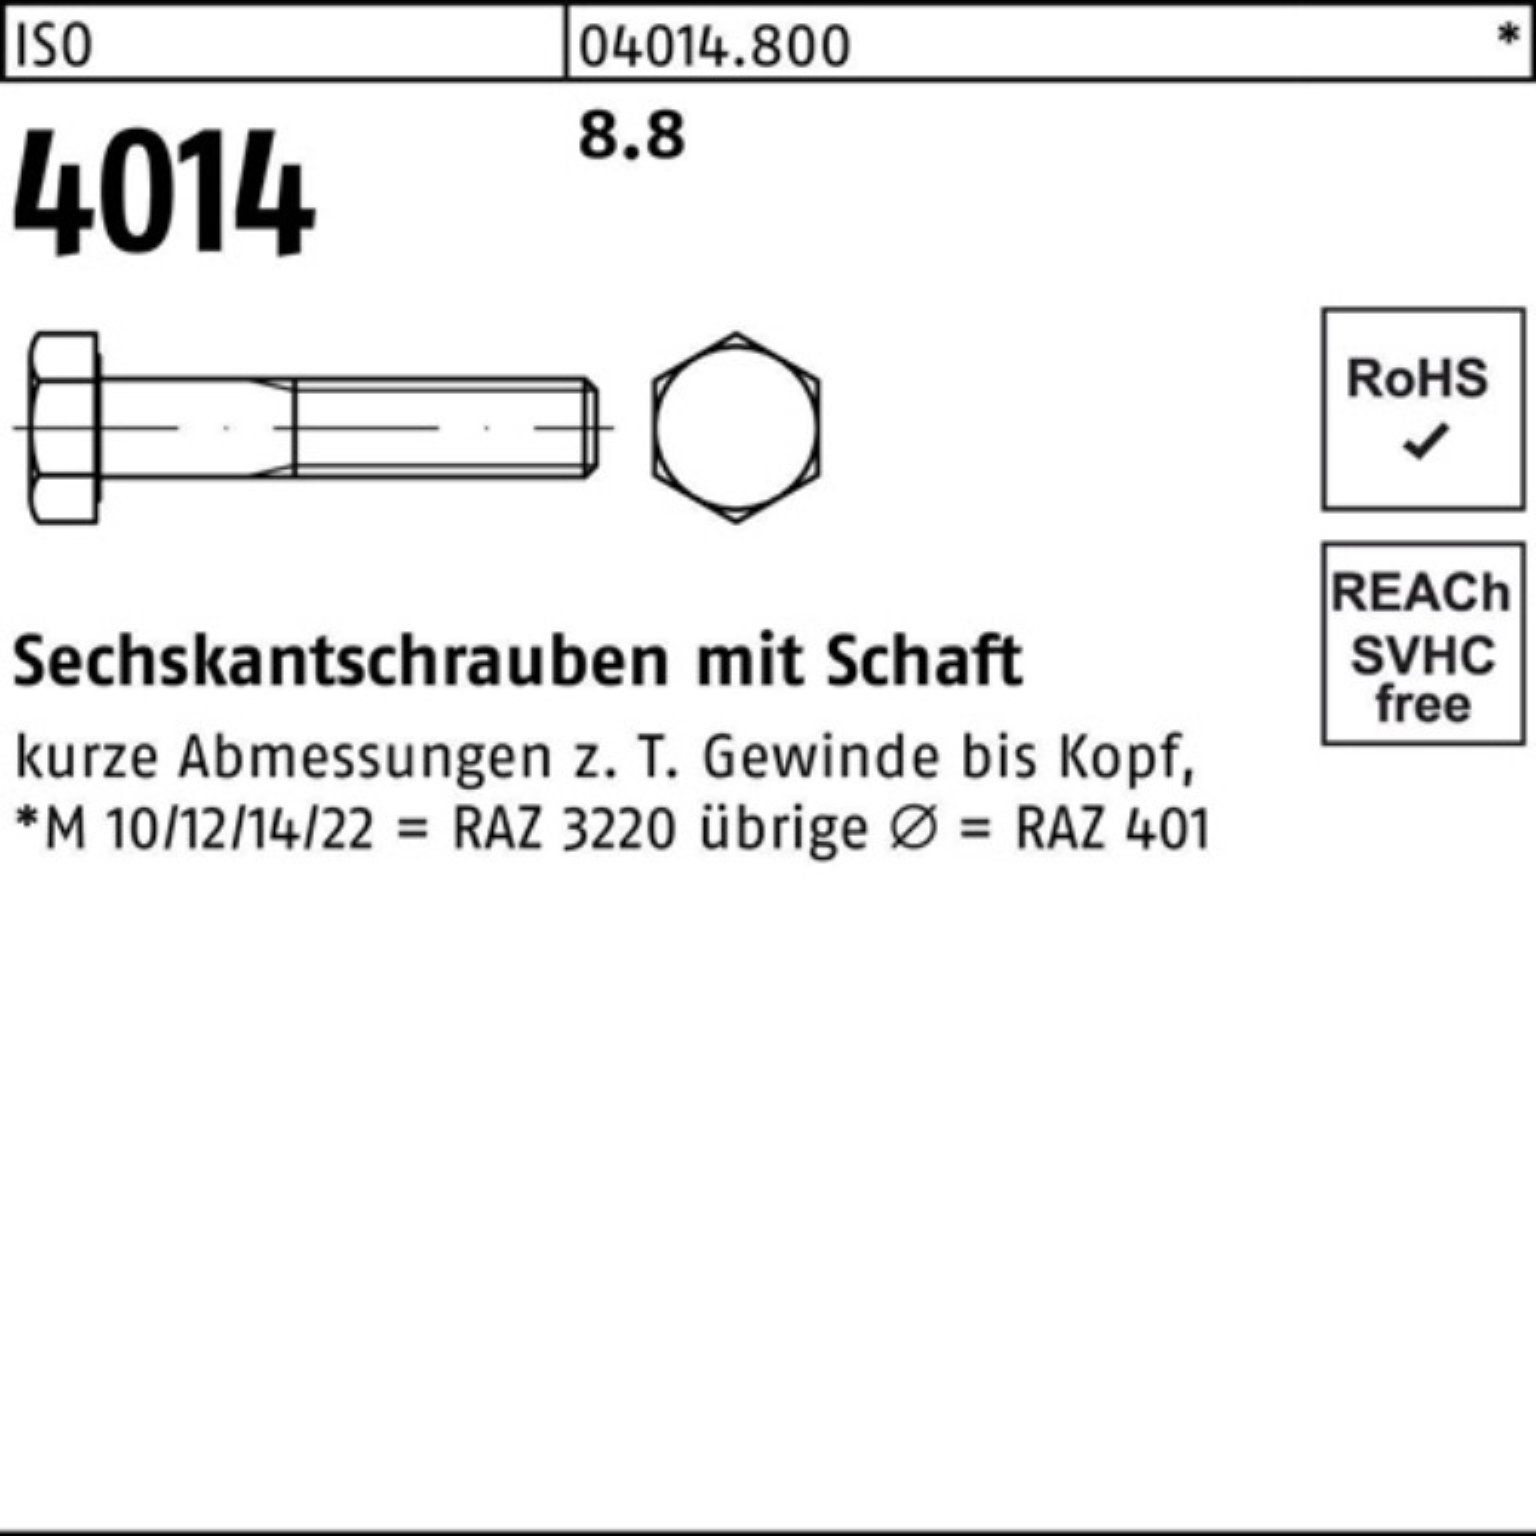 Bufab Sechskantschraube 100er 200 Pack Sechskantschraube 8.8 ISO Schaft Stück 100 IS 4014 M6x